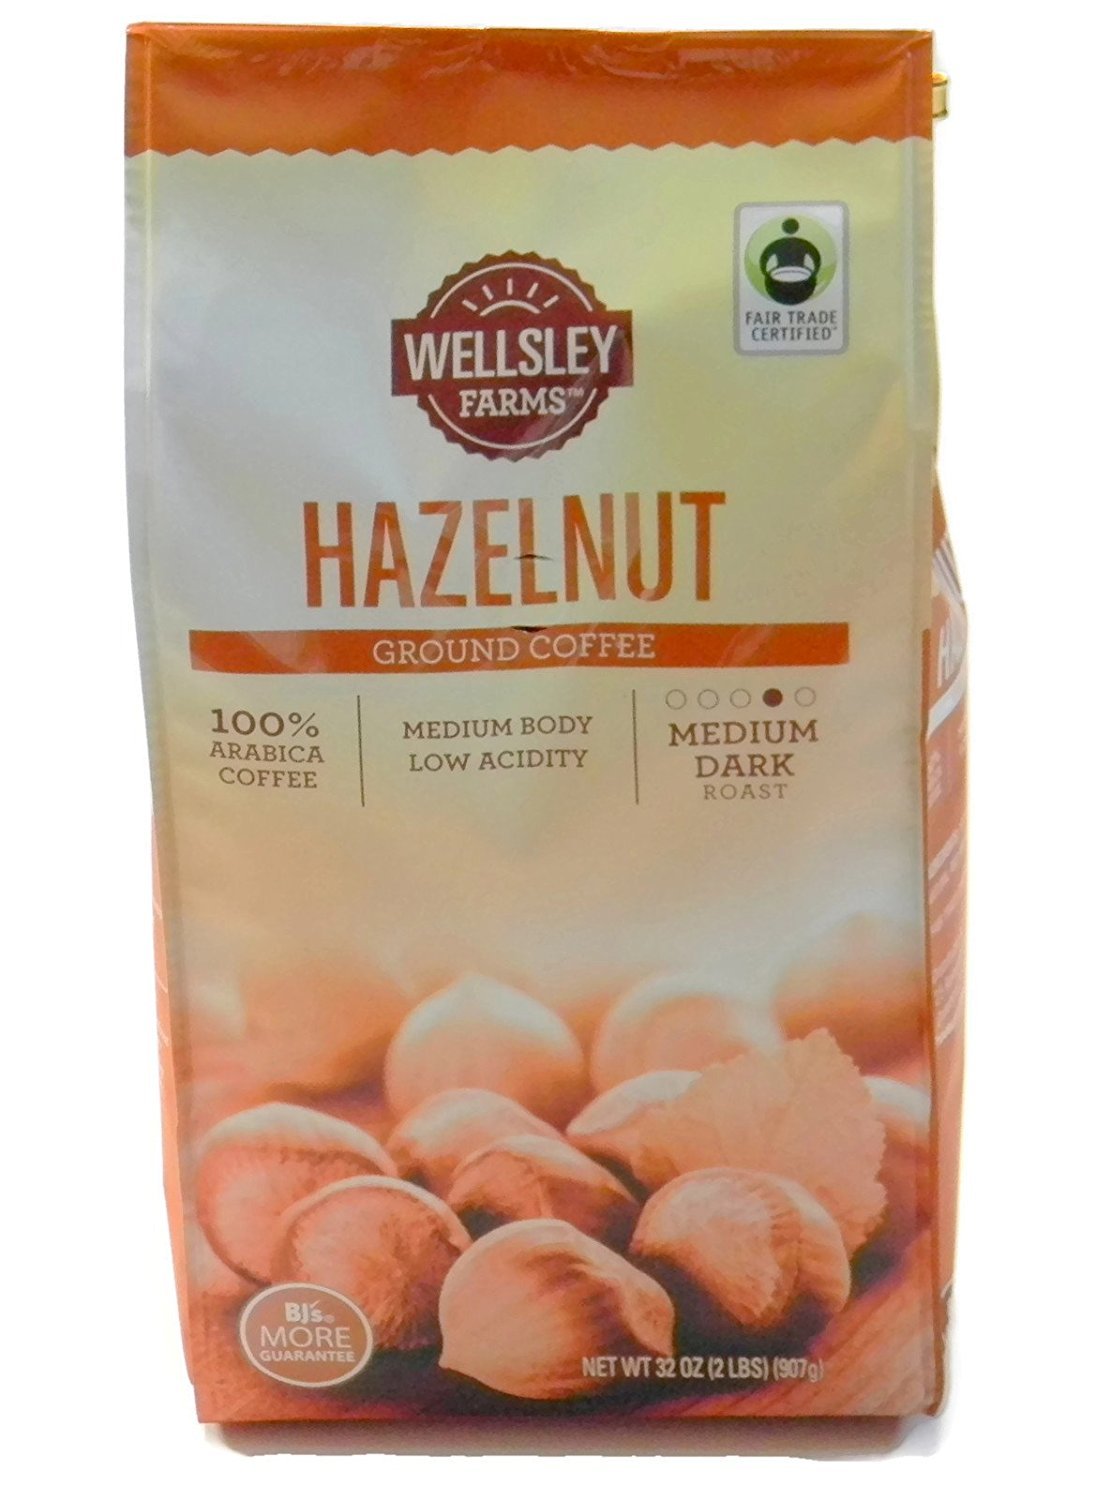 Wellsley Farms Hazelnut Ground Coffee